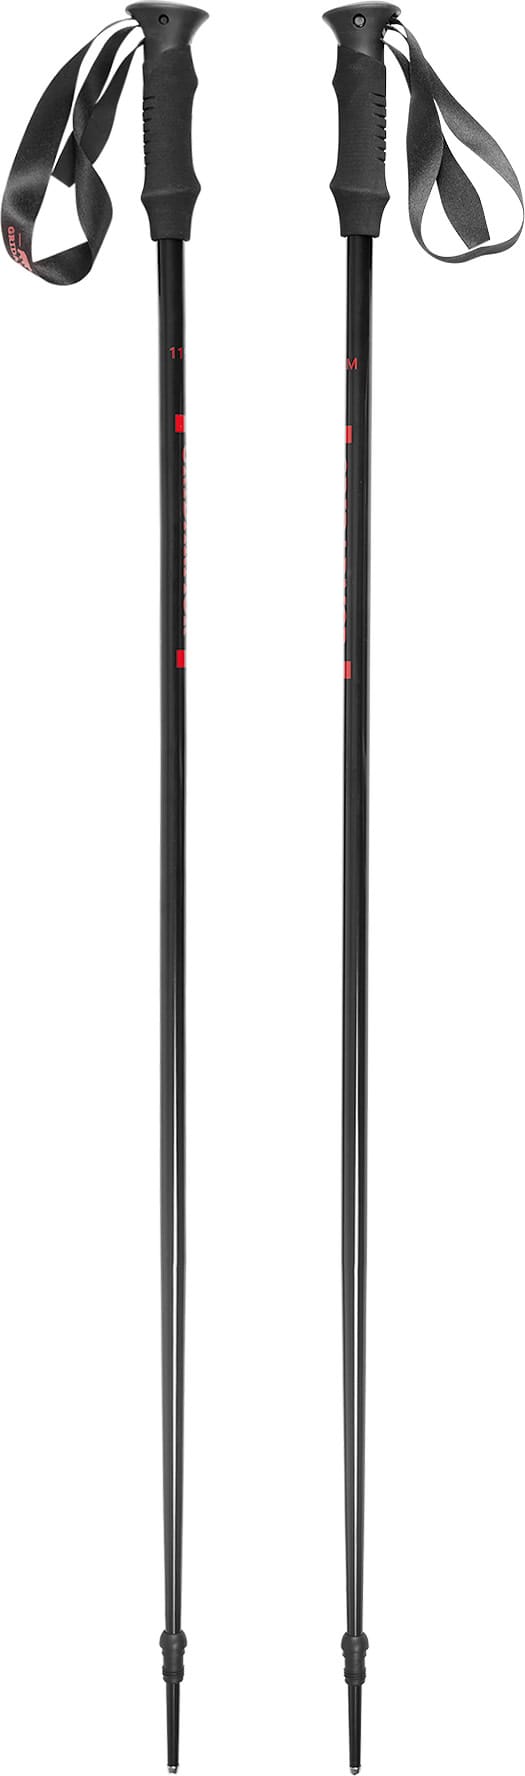 Hafjell Ski Pole Black/Ribbon Red